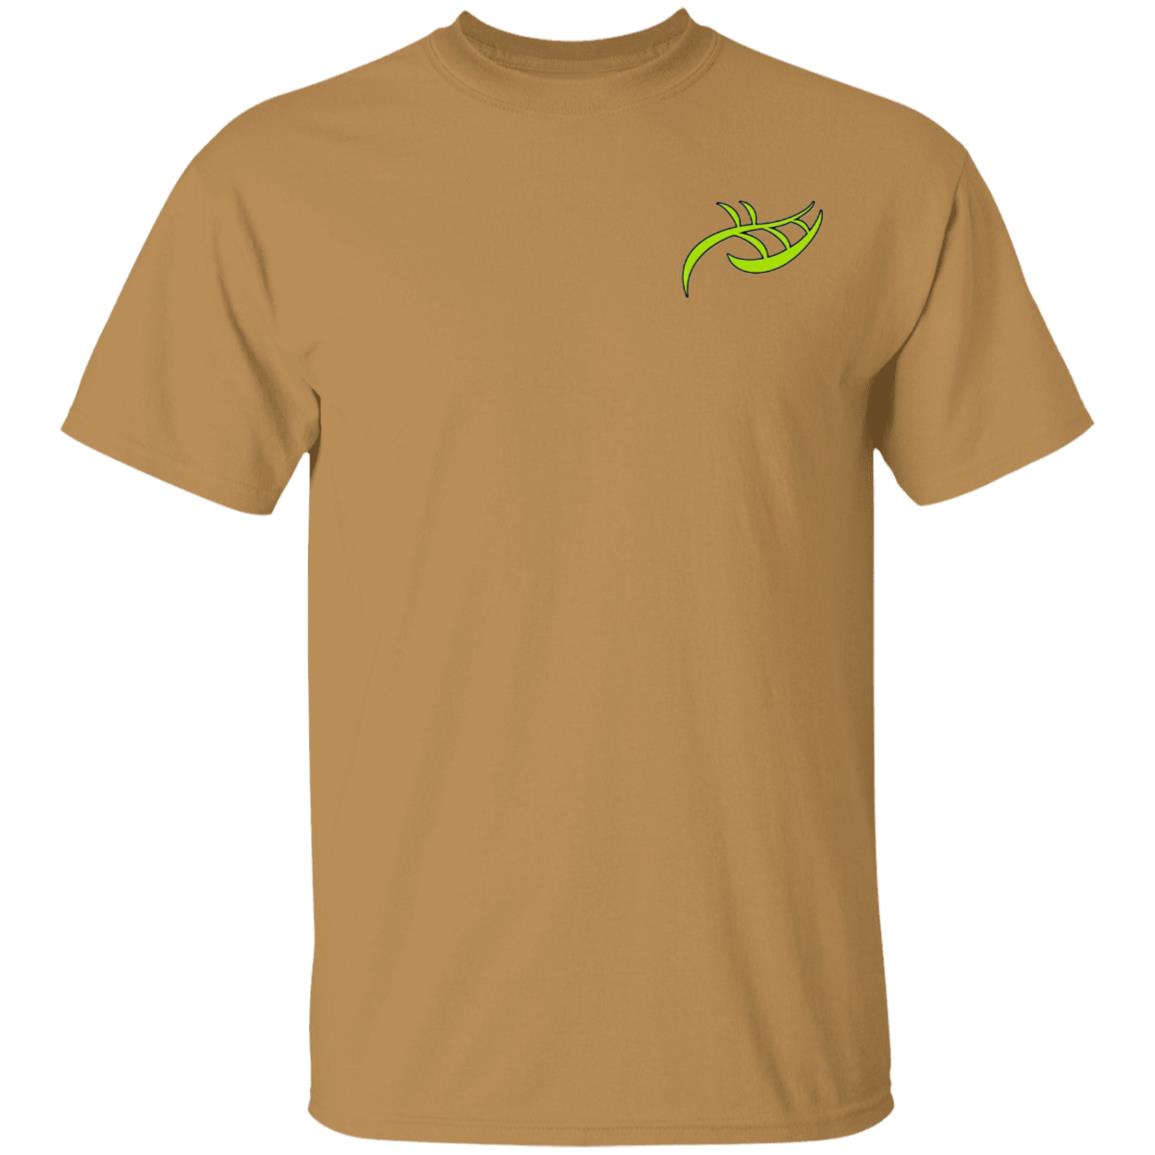 Yardagri T-Shirt (F/B) - Premium T-Shirts from CustomCat - Just $22.95! Shop now at Yard Agri Supply